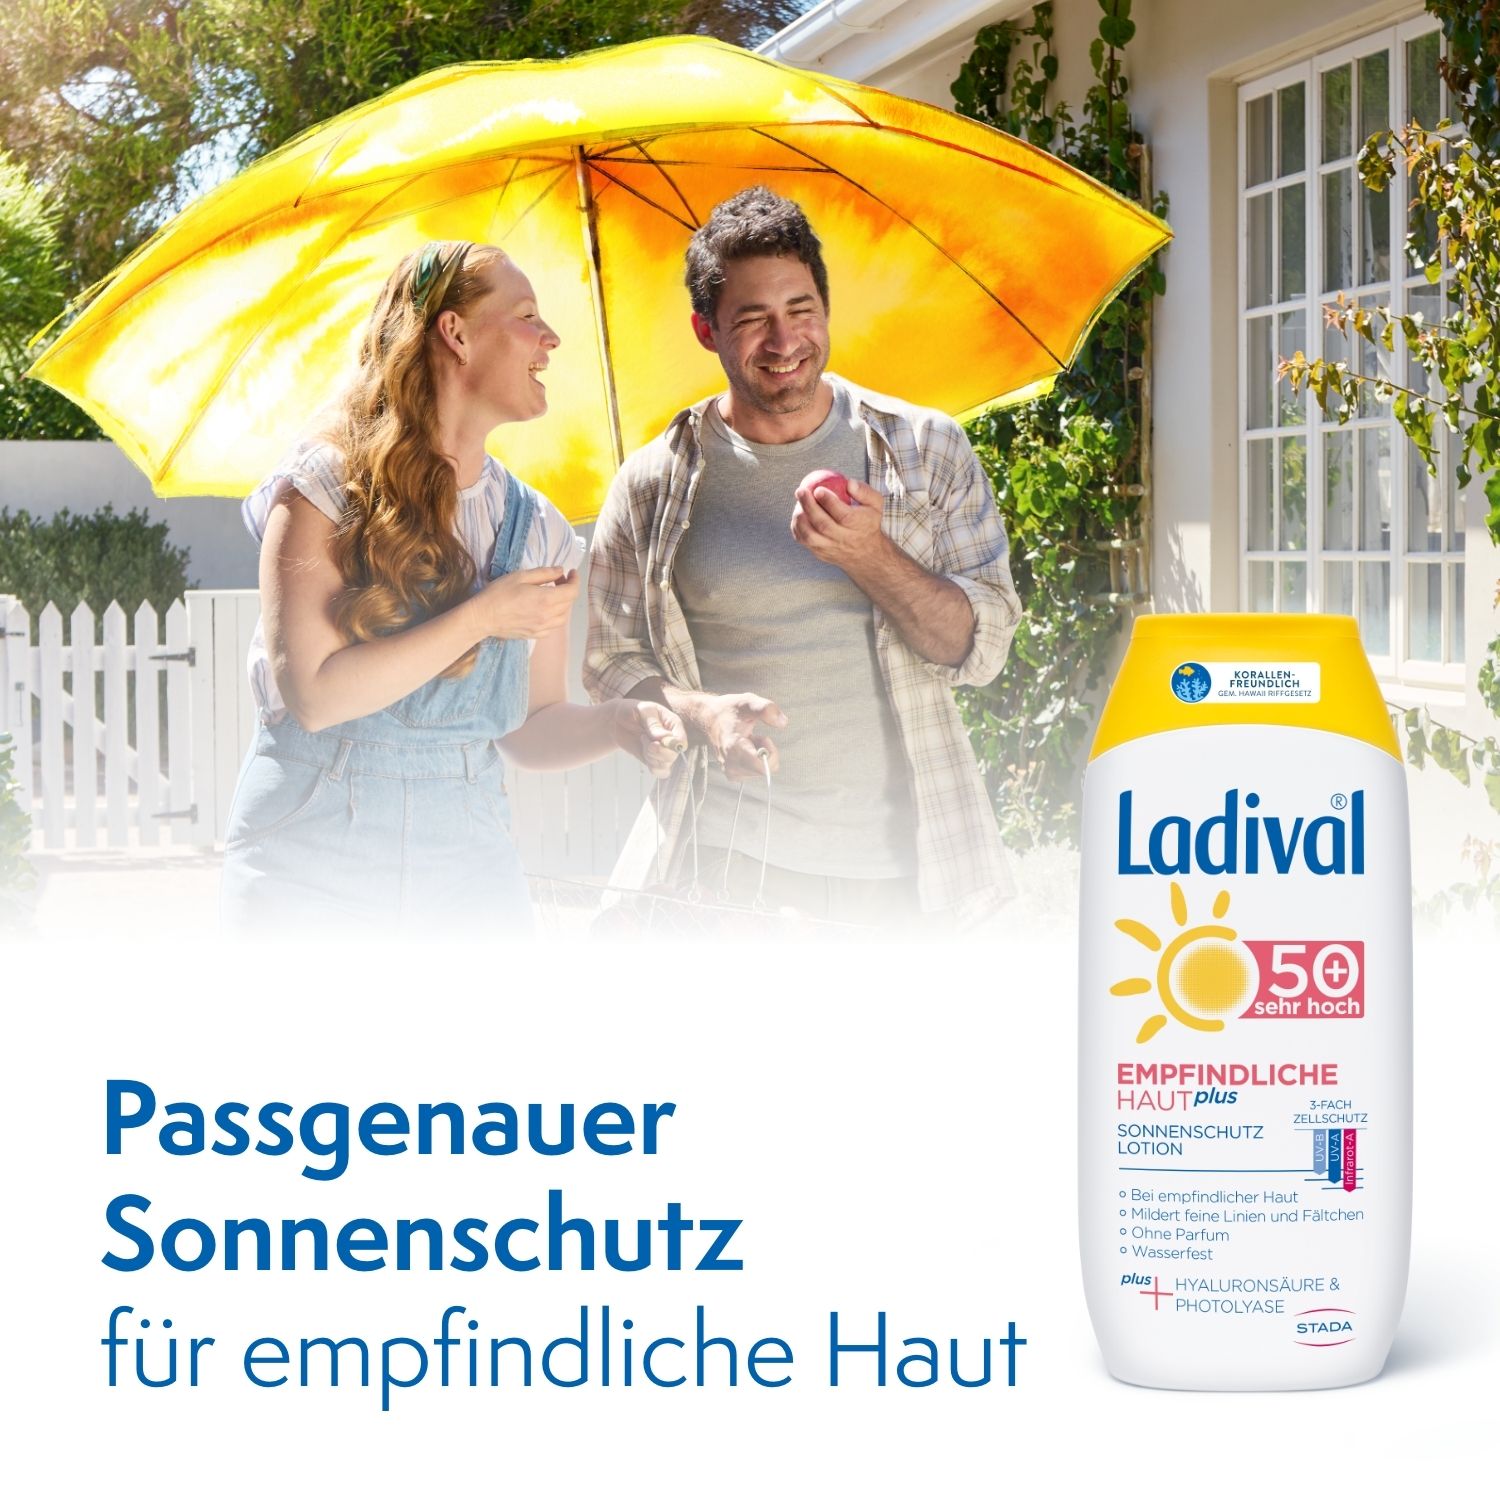 Ladival® Empfindliche Haut plus pflegende Sonnenschutz Lotion LSF 50+ mit Hyaluronsäure & Photolyase